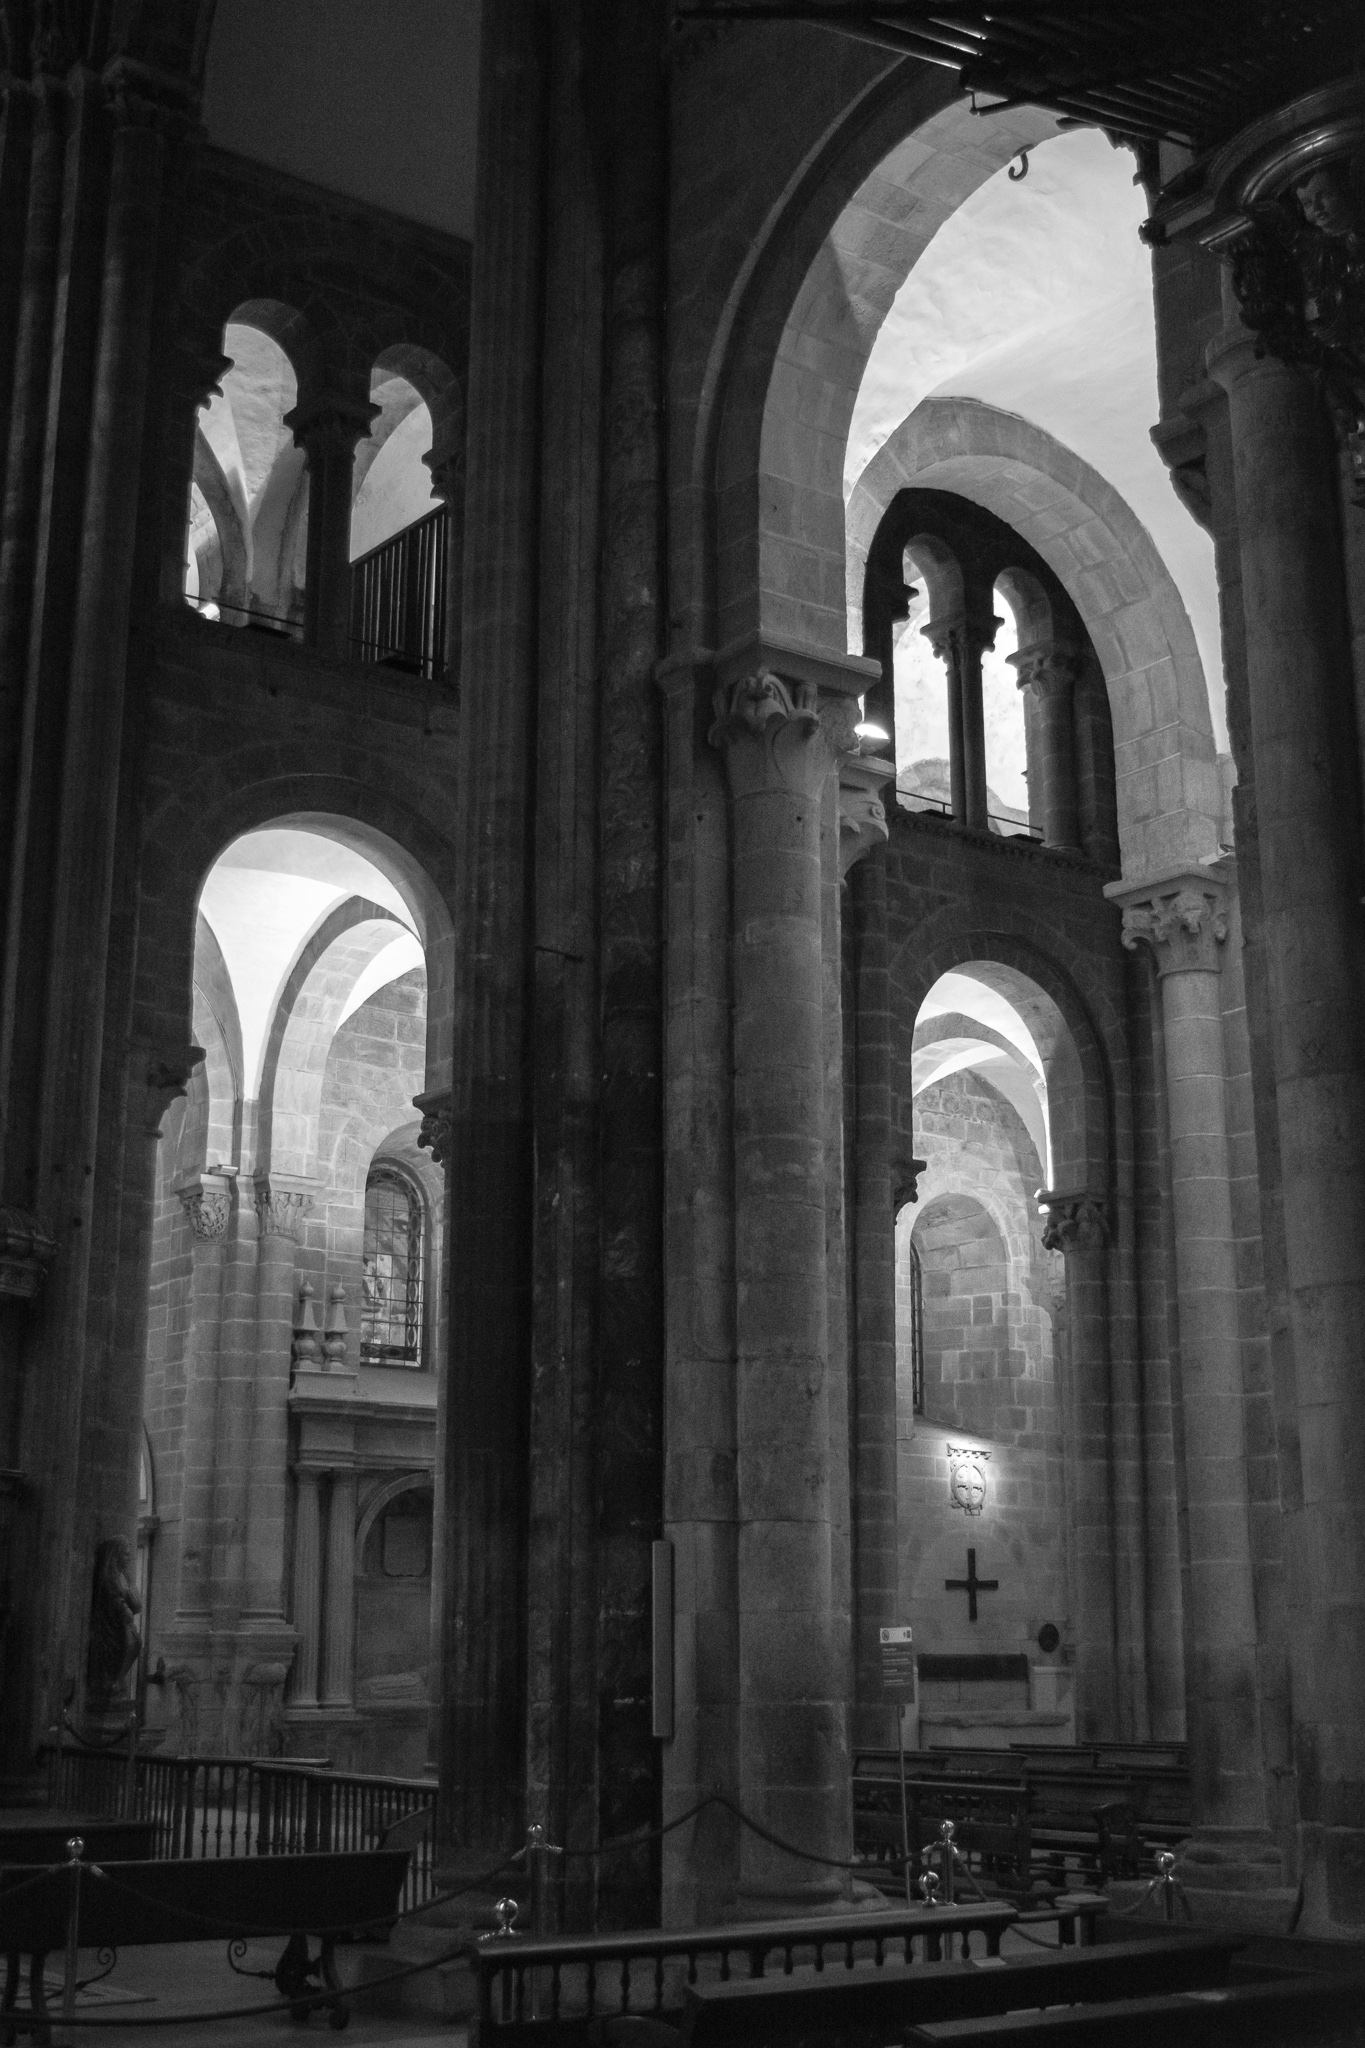 A Catedral de Santiago de Compostela, comezada a construír en 1075, é un dos templos máis coñecidos e admirados do mundo, non só polo seu patrimonio arquitectónico e artístico que conxuga os estilos románico e barroco, senón por ser referencia para os miles de peregrinos que parten cara a ela cada ano. <br><br>A construción do templo, declarado Patrimonio da Humanidade en 1985 e duns 100m de longo e máis de 70m de altura, completouse aproximadamente cara ao ano 1200.